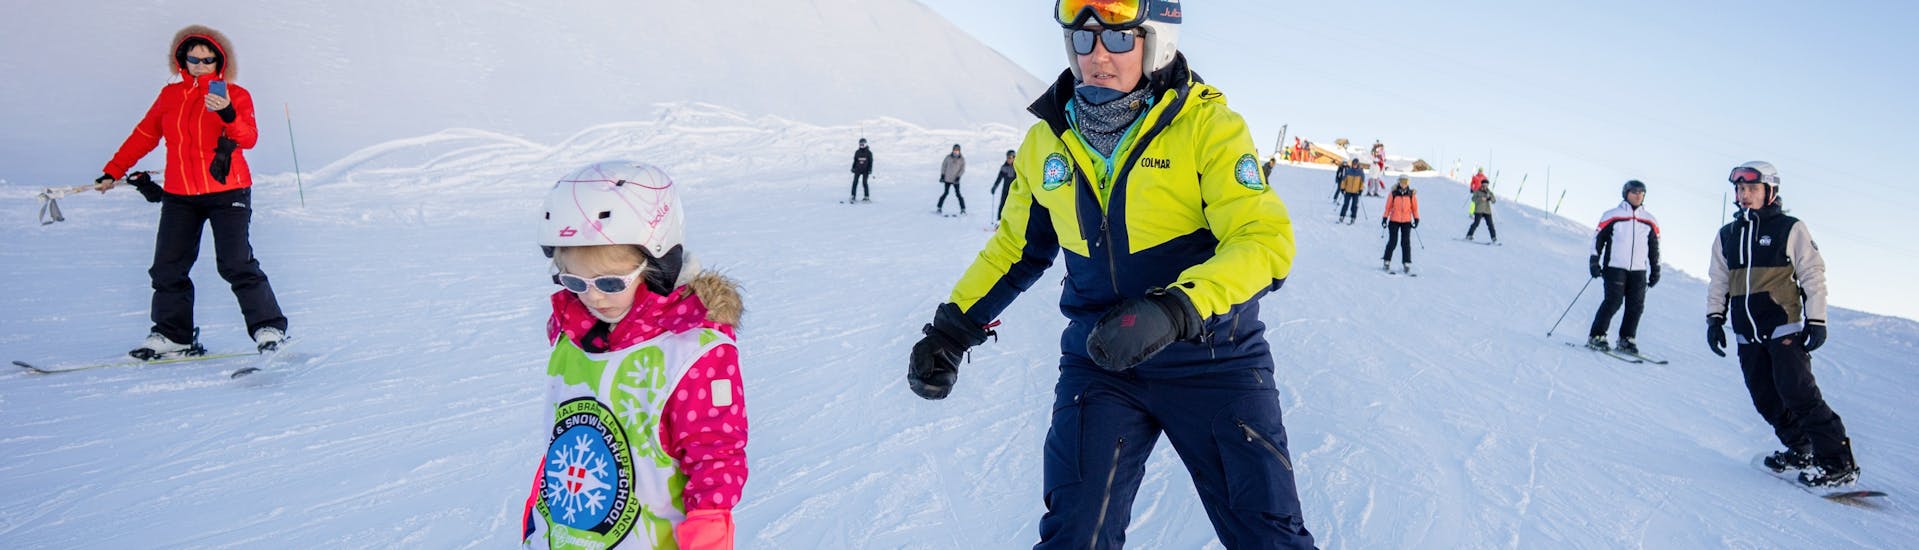 Une enfant descend un piste en confiance grâce à son Cours particulier de ski Enfants & Ados pour Tous âges avec Prosneige Val Thorens & Les Menuires.